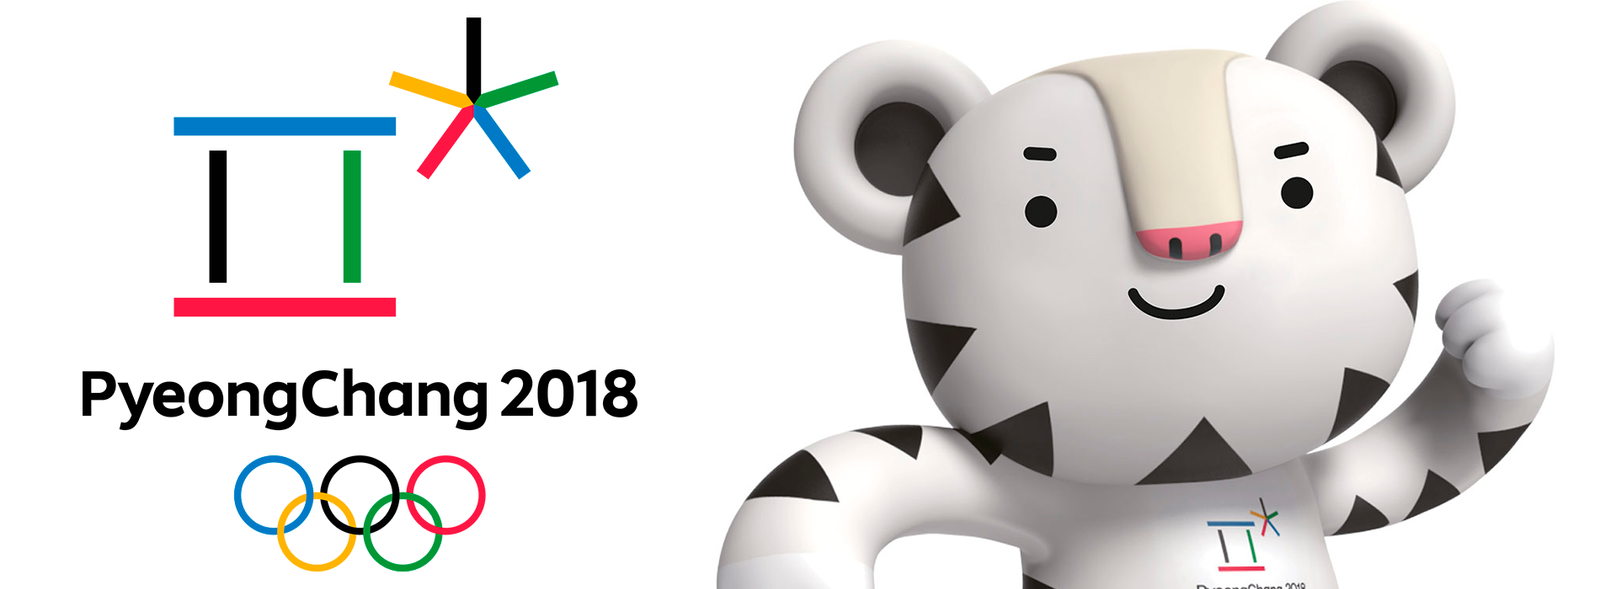 PyeongChang 2018: La tecnología al servicio de los juegos ...